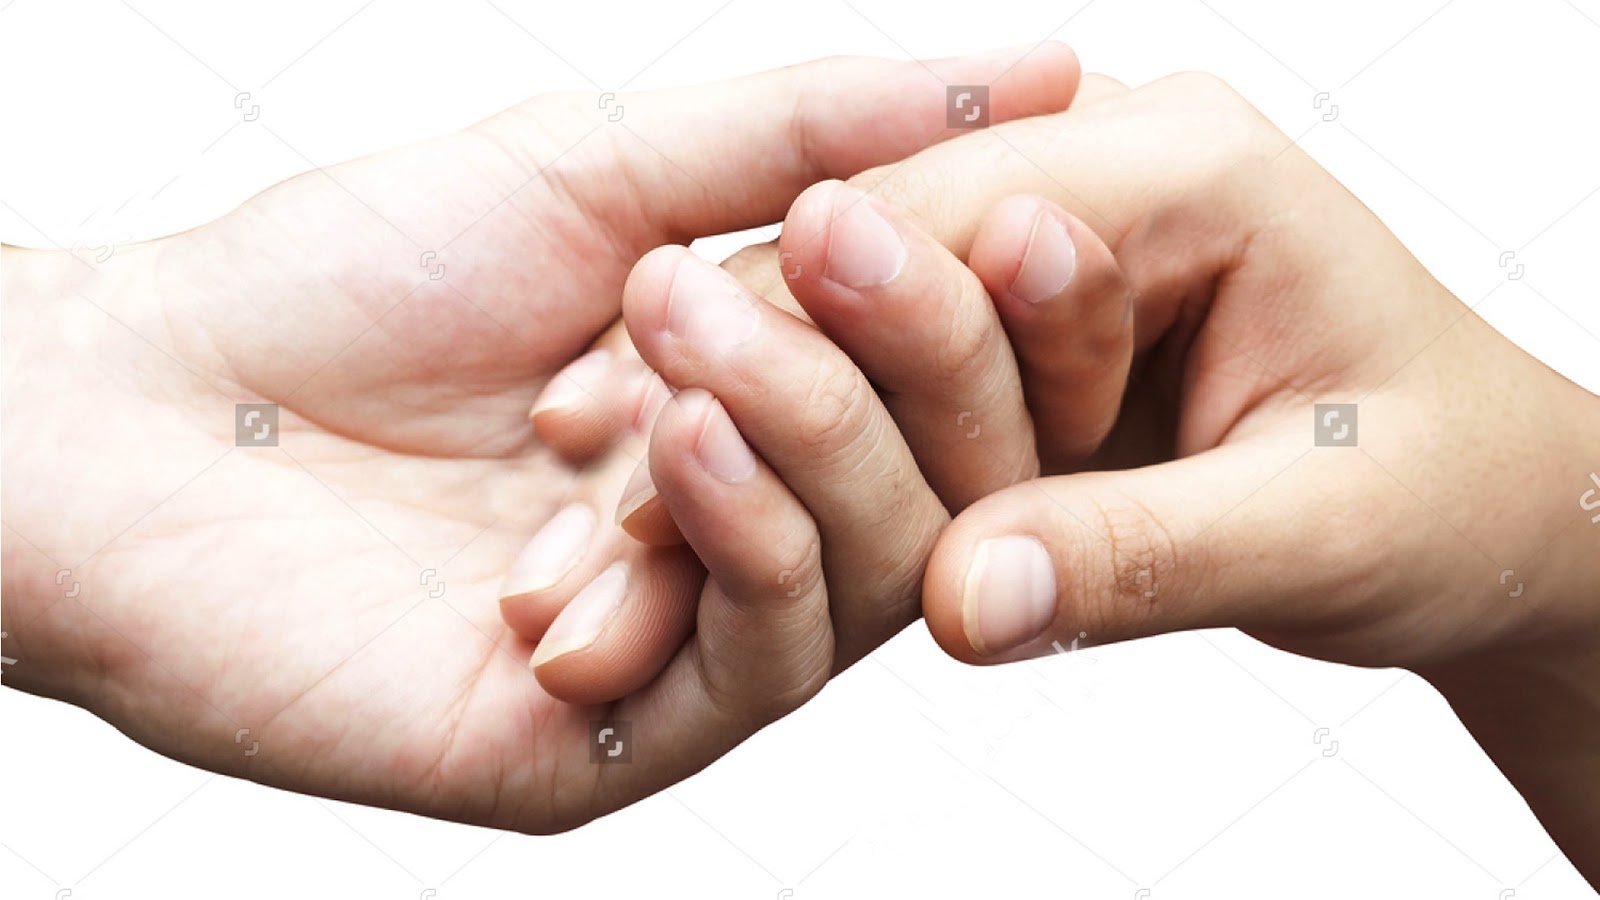 promesa de fondo de pantalla,mano,gesto,de cerca,humano,tomados de la mano